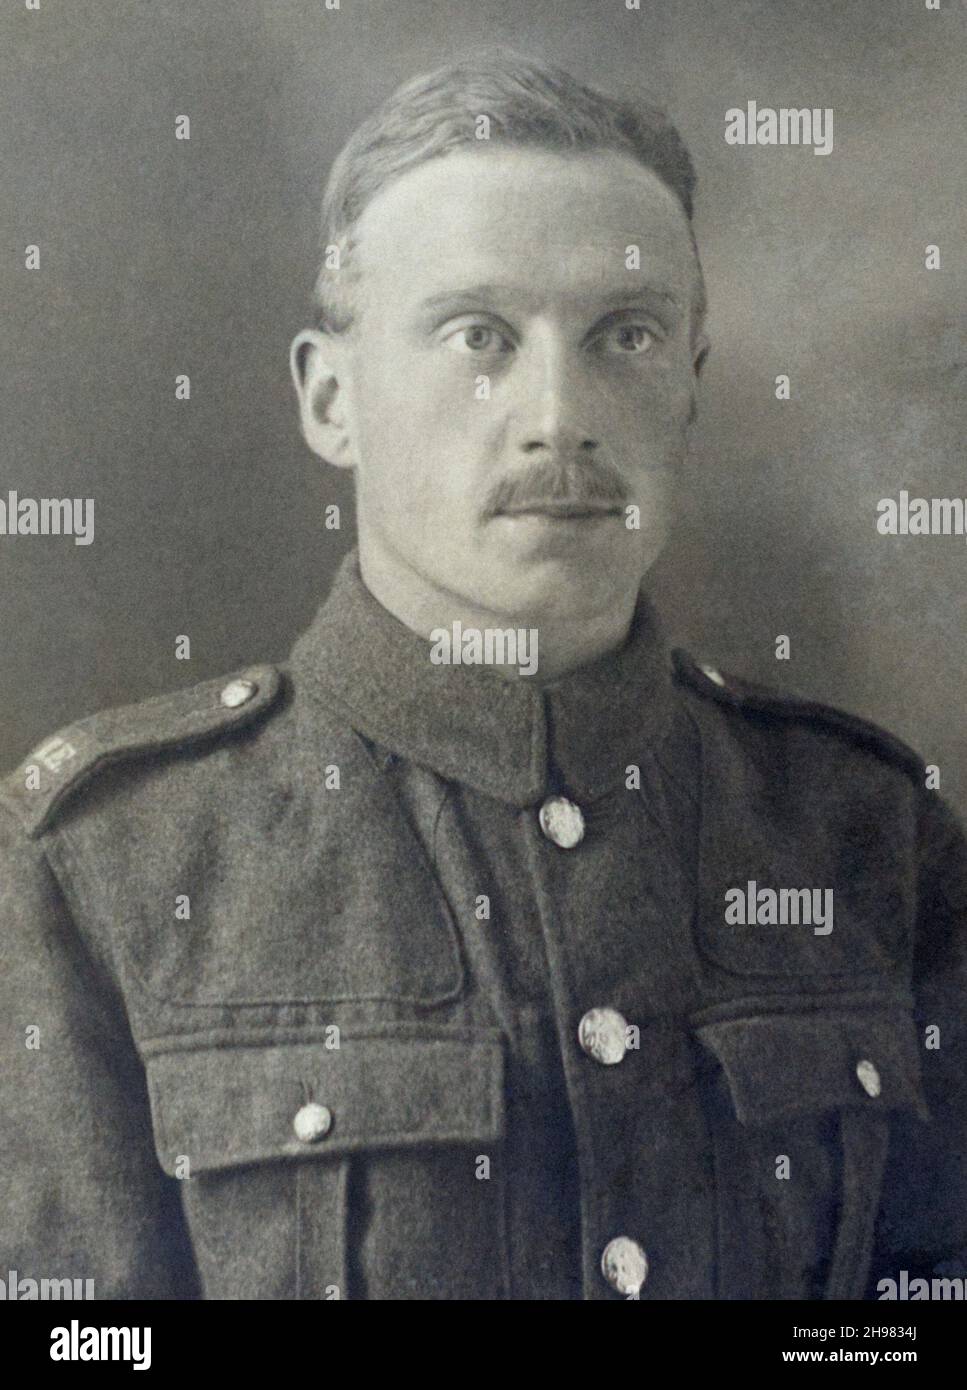 Une photo de la première Guerre mondiale d'un soldat britannique, un Saper dans les Royal Engineers.Avec titres d'épaule en tissu. Banque D'Images